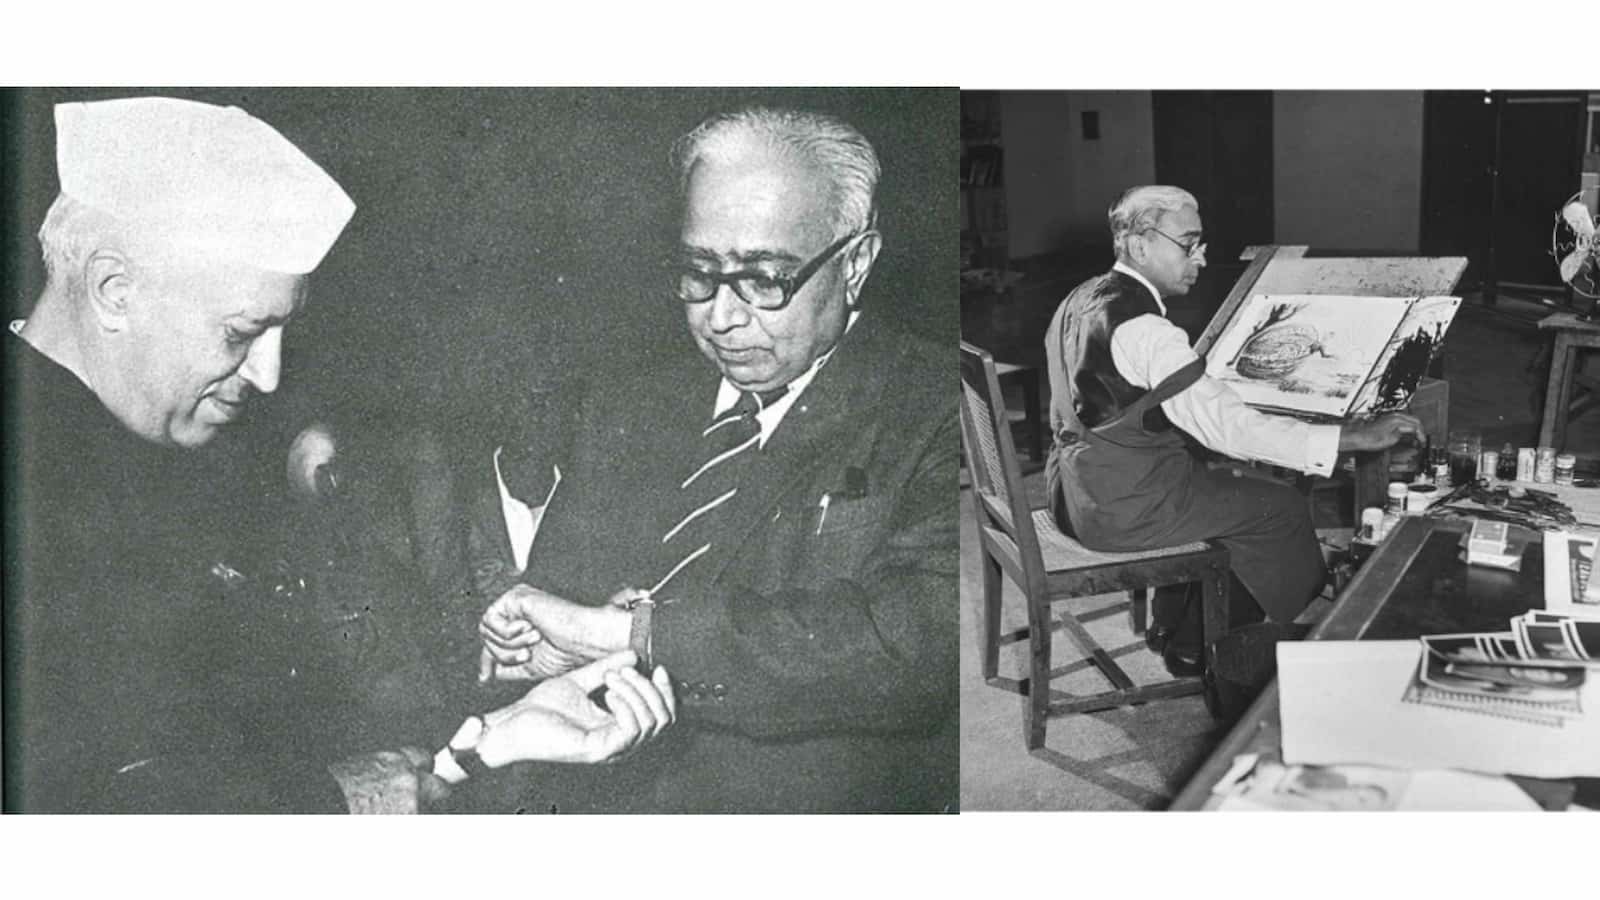 Cartoonist Shankar and Nehru